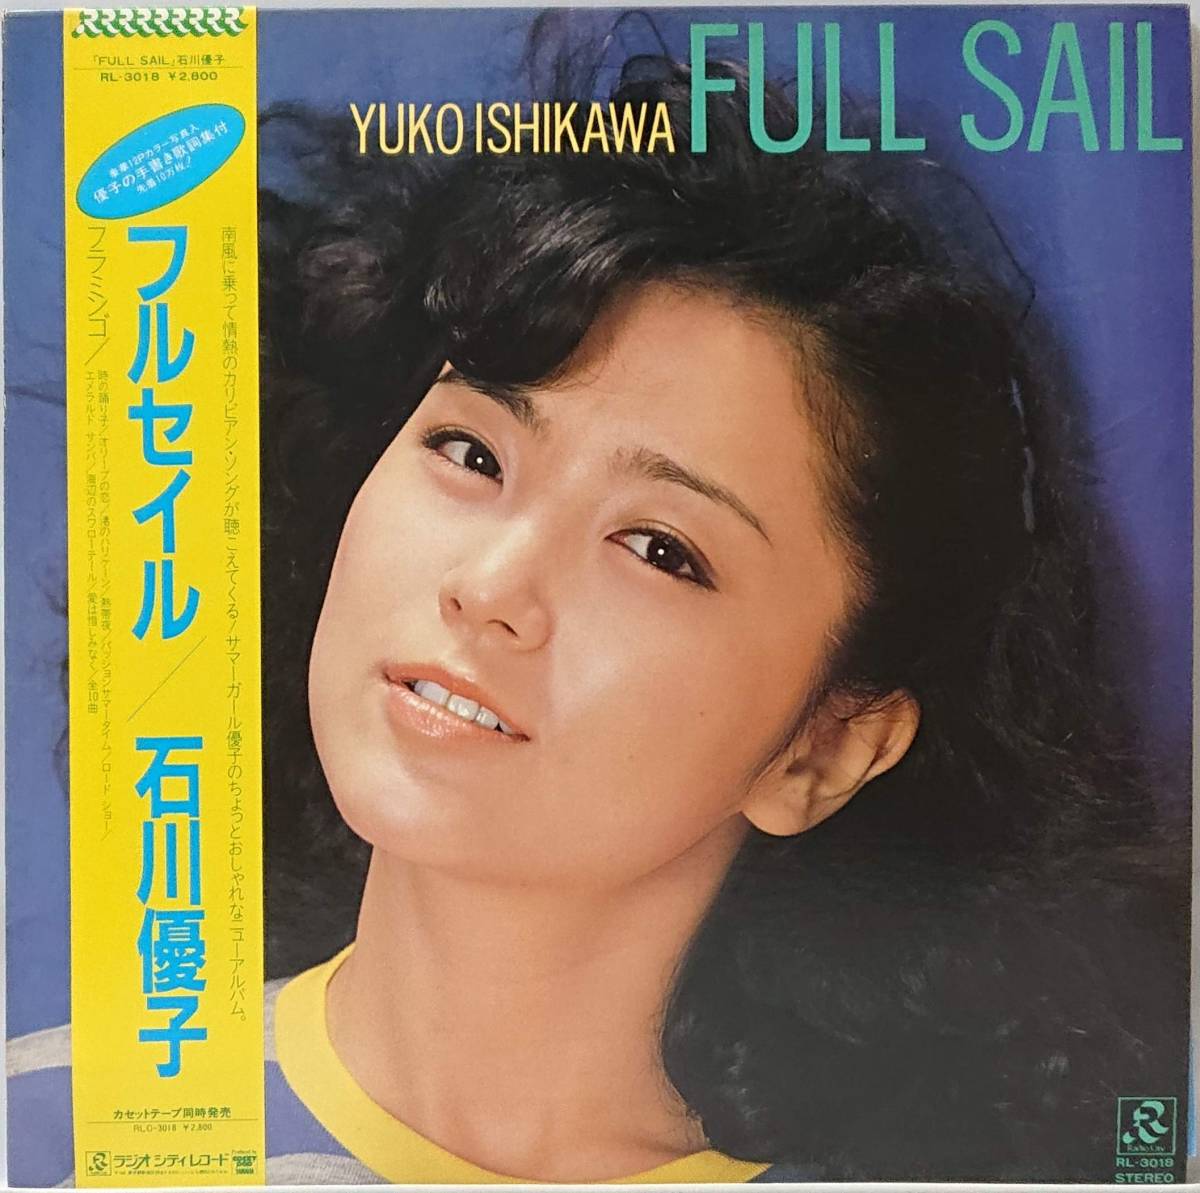 石川優子 : FULL SAIL フルセイル 帯付き 国内盤 中古 アナログ LPレコード盤 1982年 RL-3018 M2-KDO-590_画像1